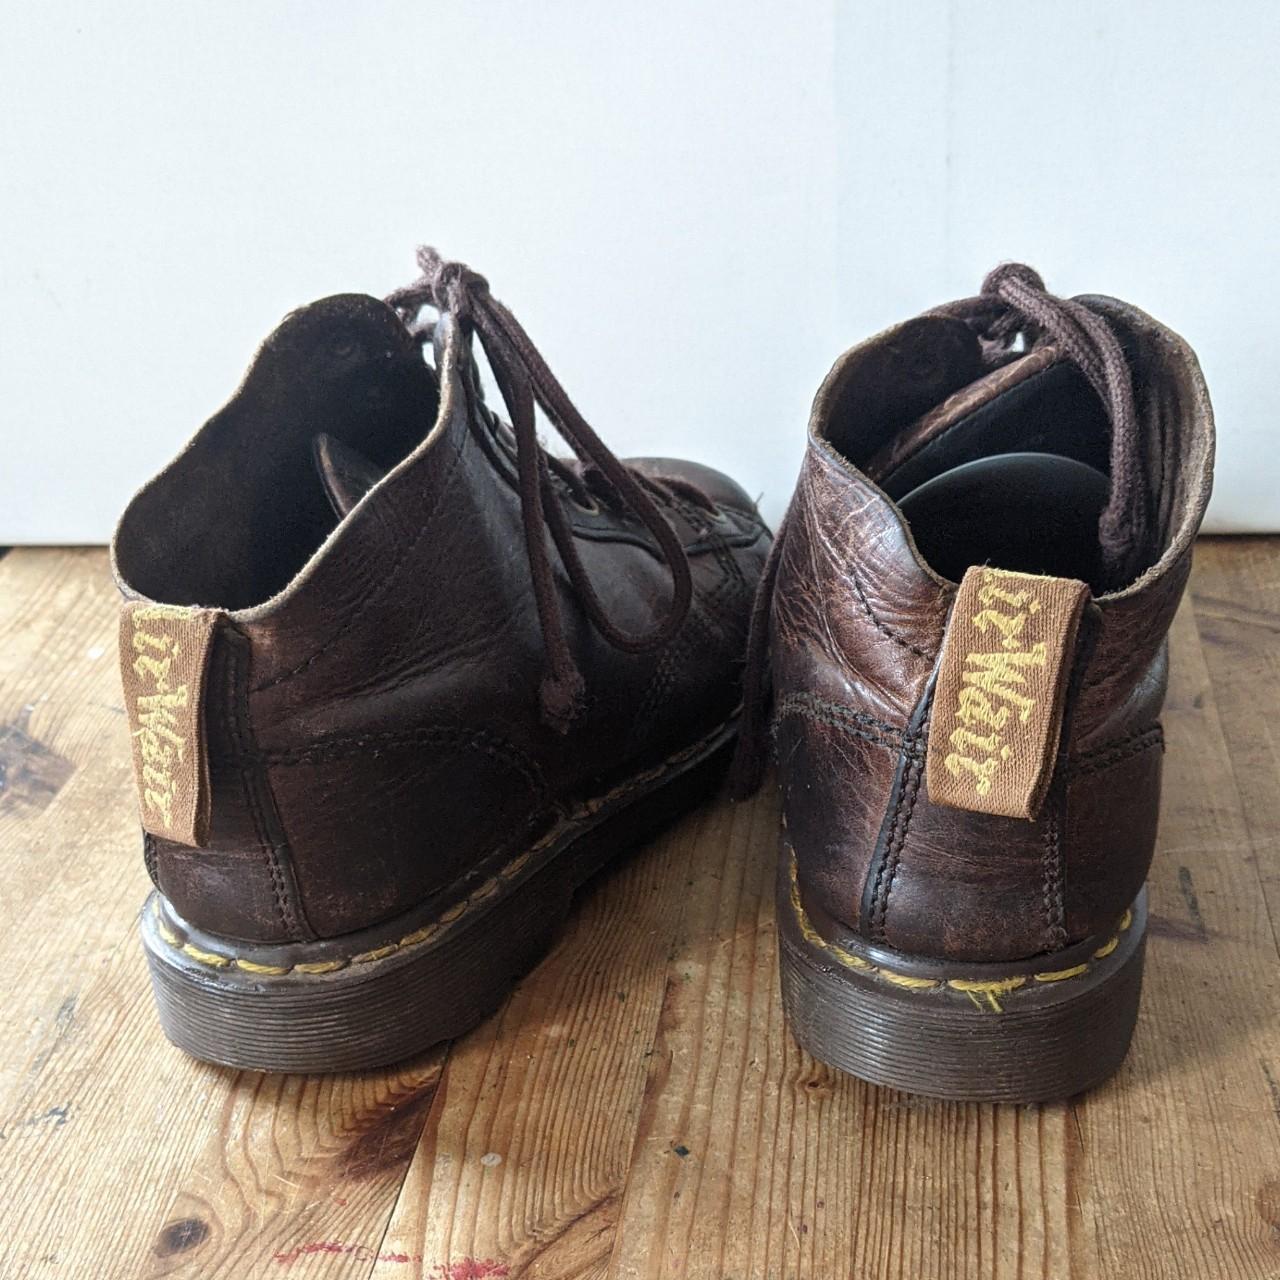 Dr. Martens Vintage combat style boots in a UK... - Depop